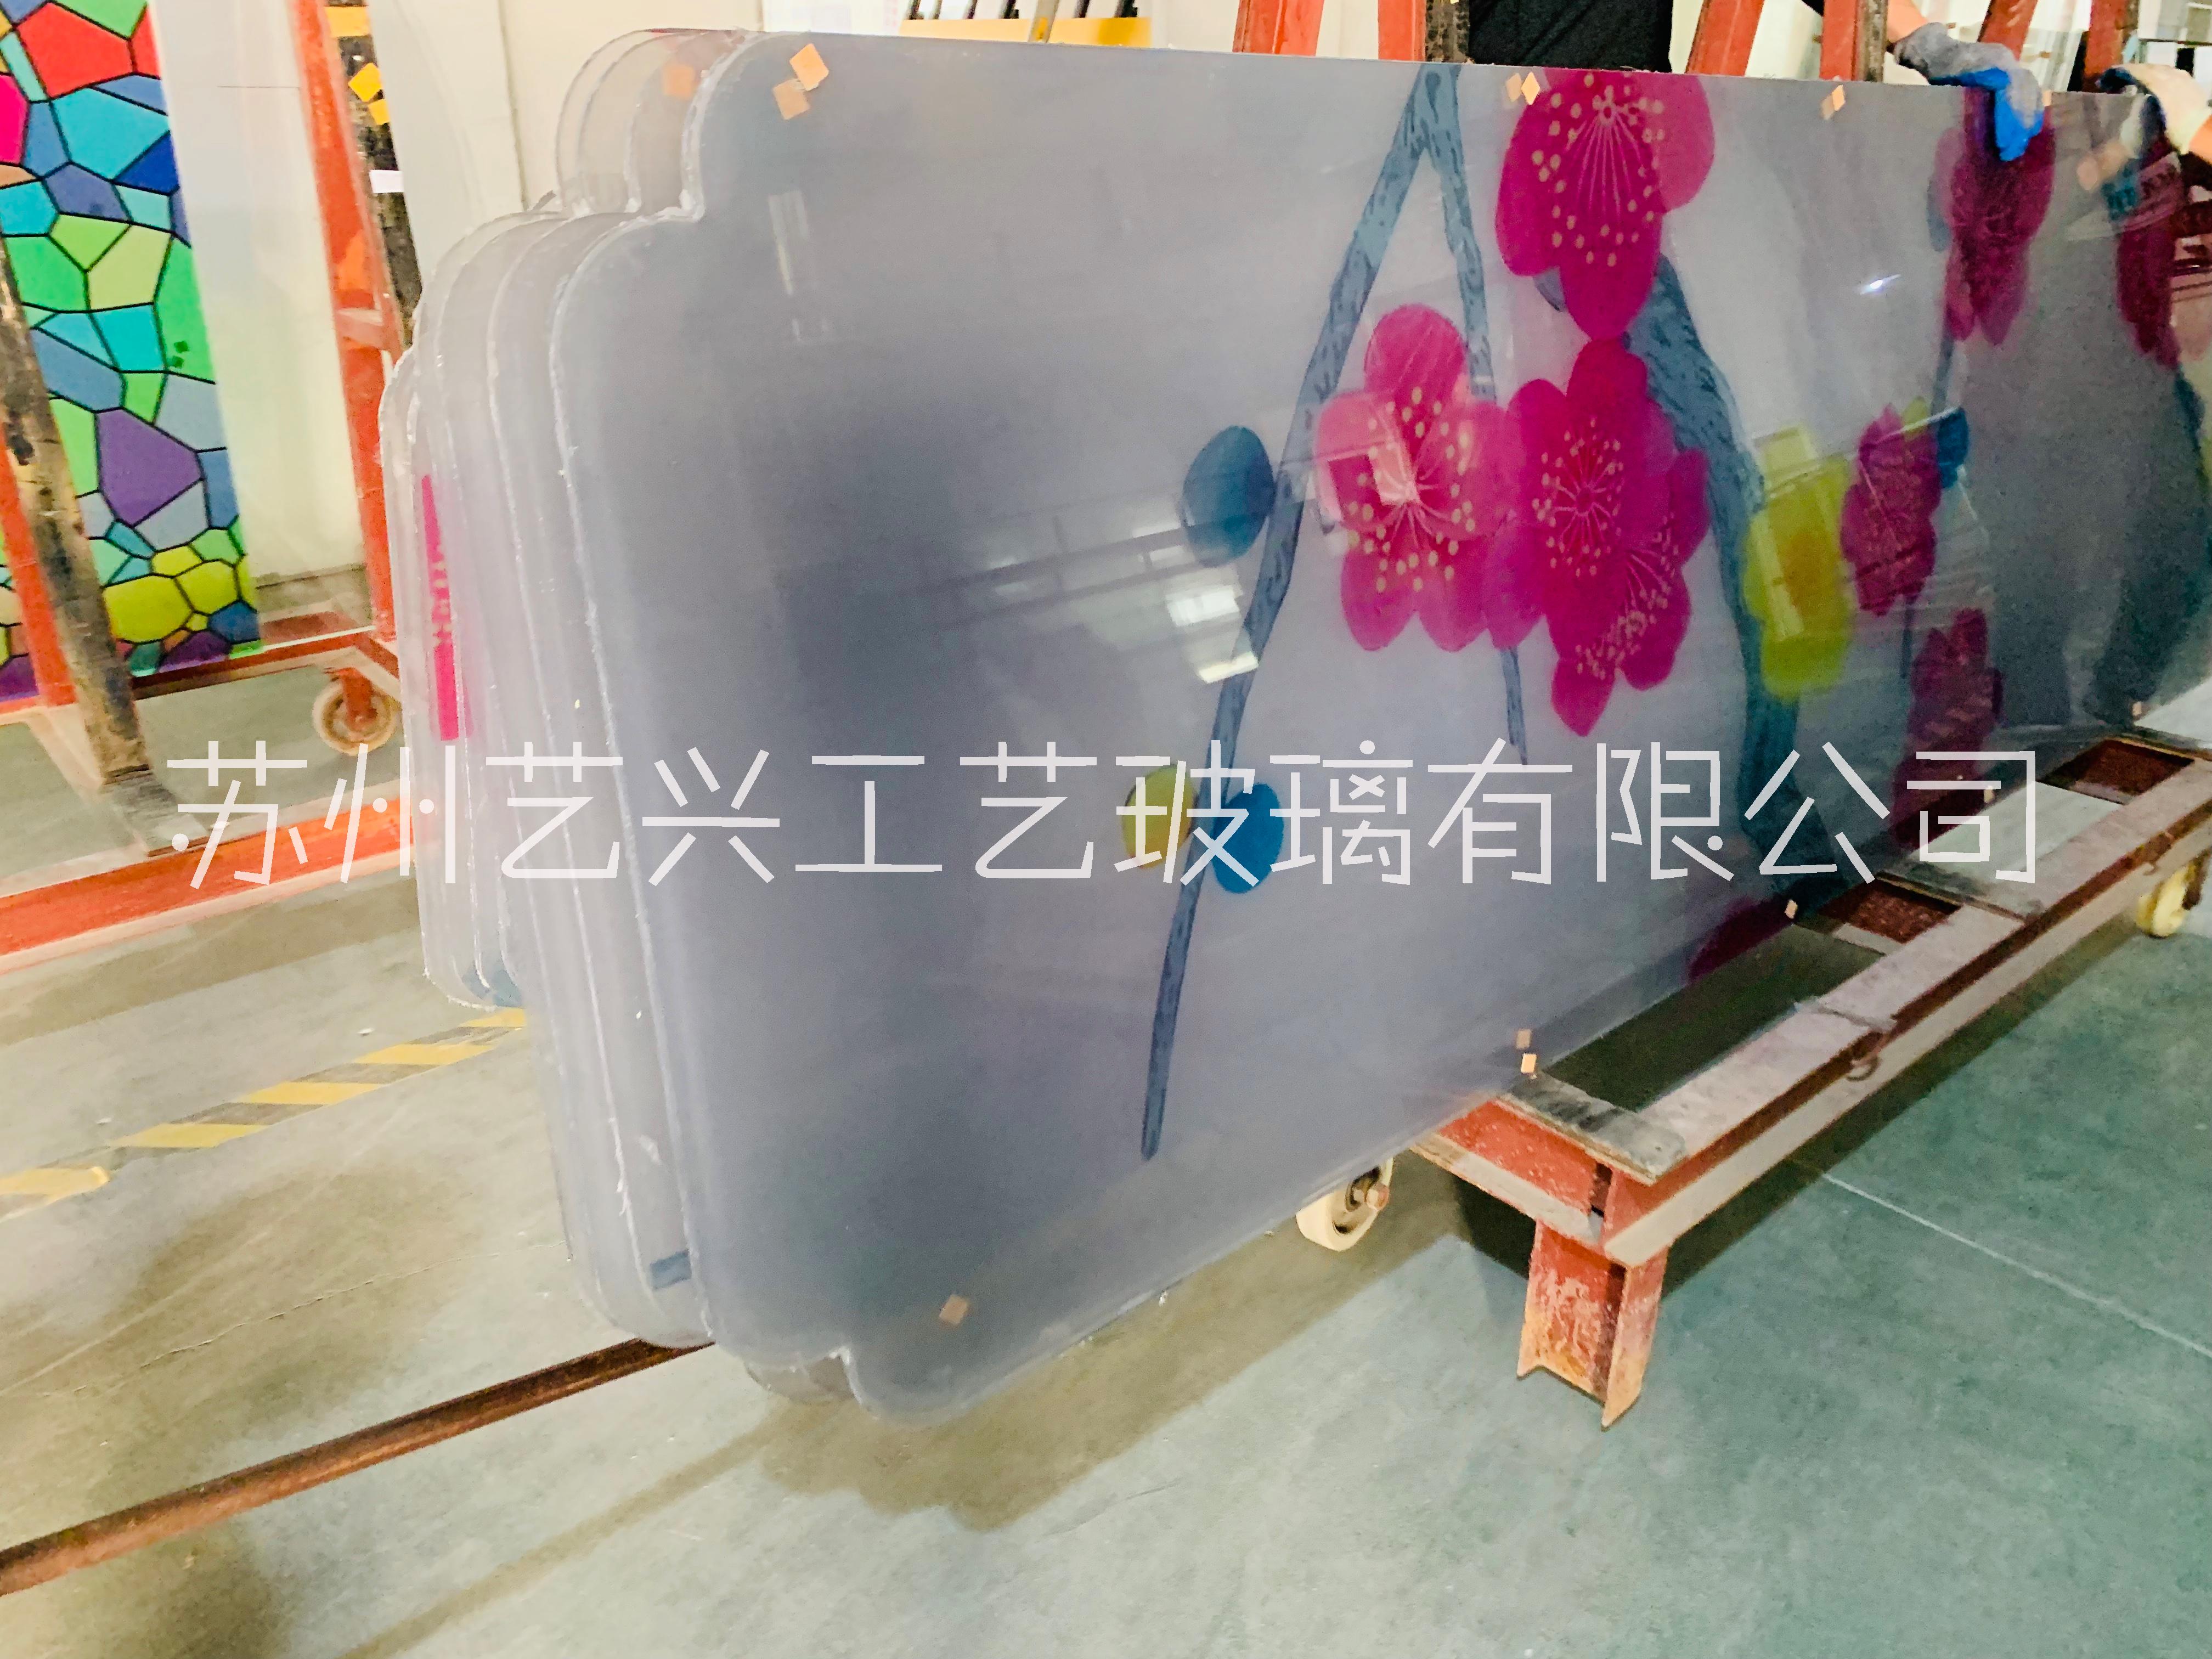 上海彩绘玻璃厂家订购@上海彩绘玻璃供应商@上海彩绘玻璃价格@上海彩绘玻璃供应  上海彩绘璃玻厂家订购